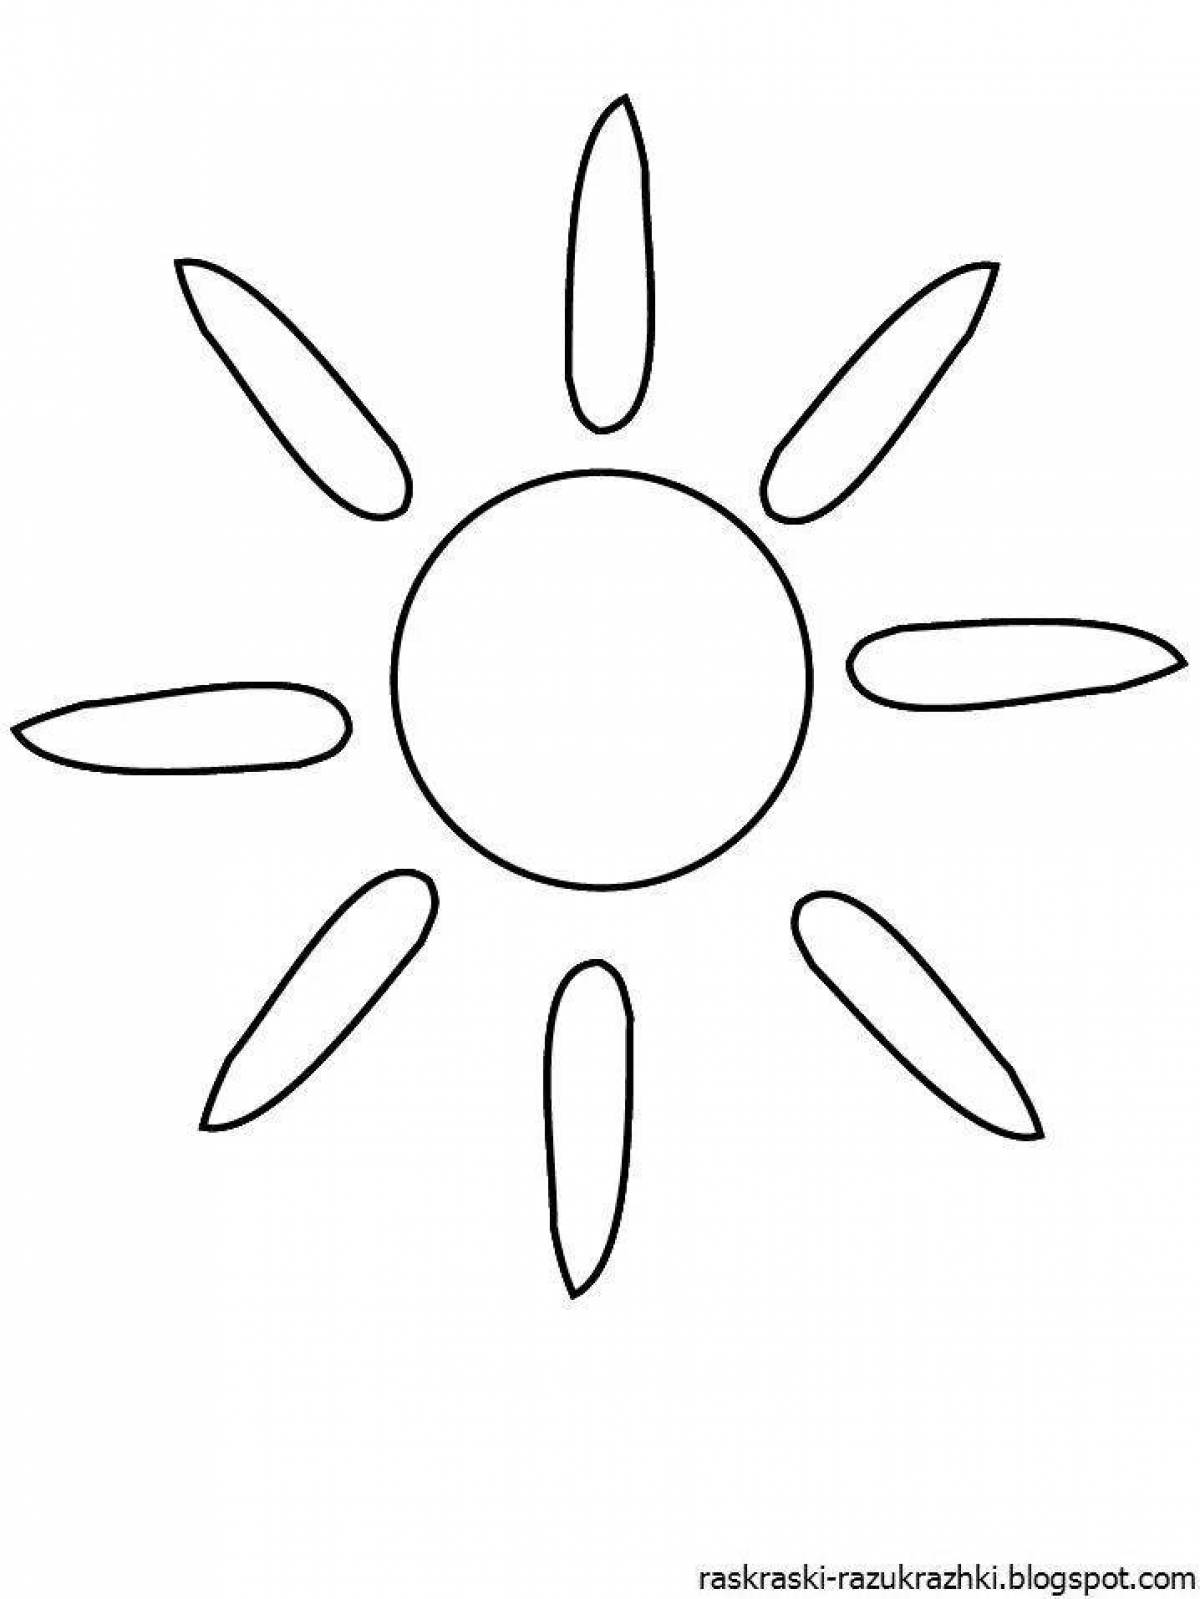 Анимированная раскраска солнце для детей 3-4 лет